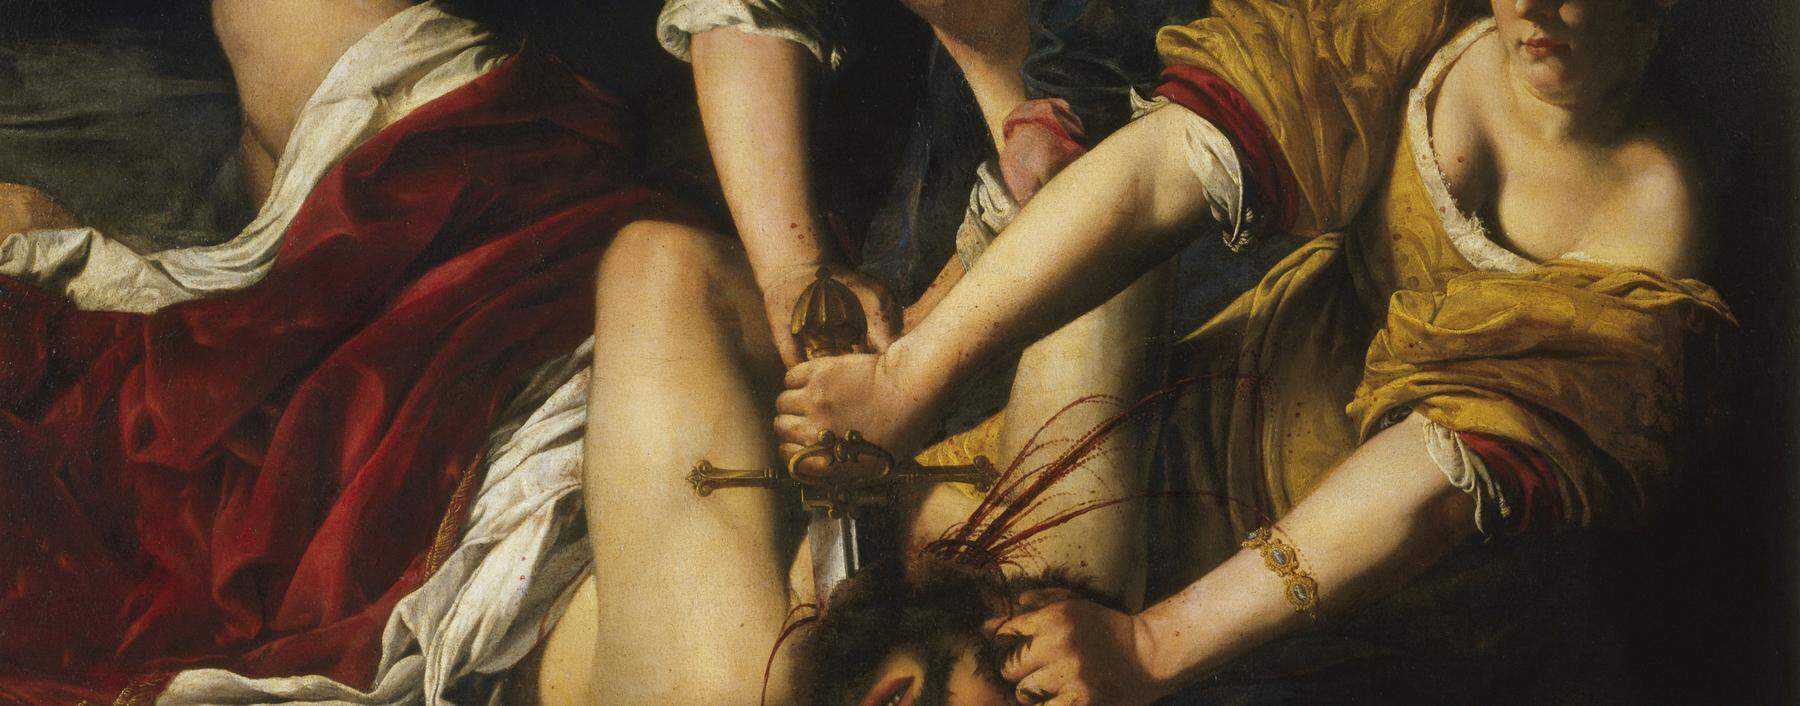 Nimmt die Malerin hier Bezug auf ihre Biografie? „Judith und Holofernes“, von Artemisia Gentileschi (1612). 